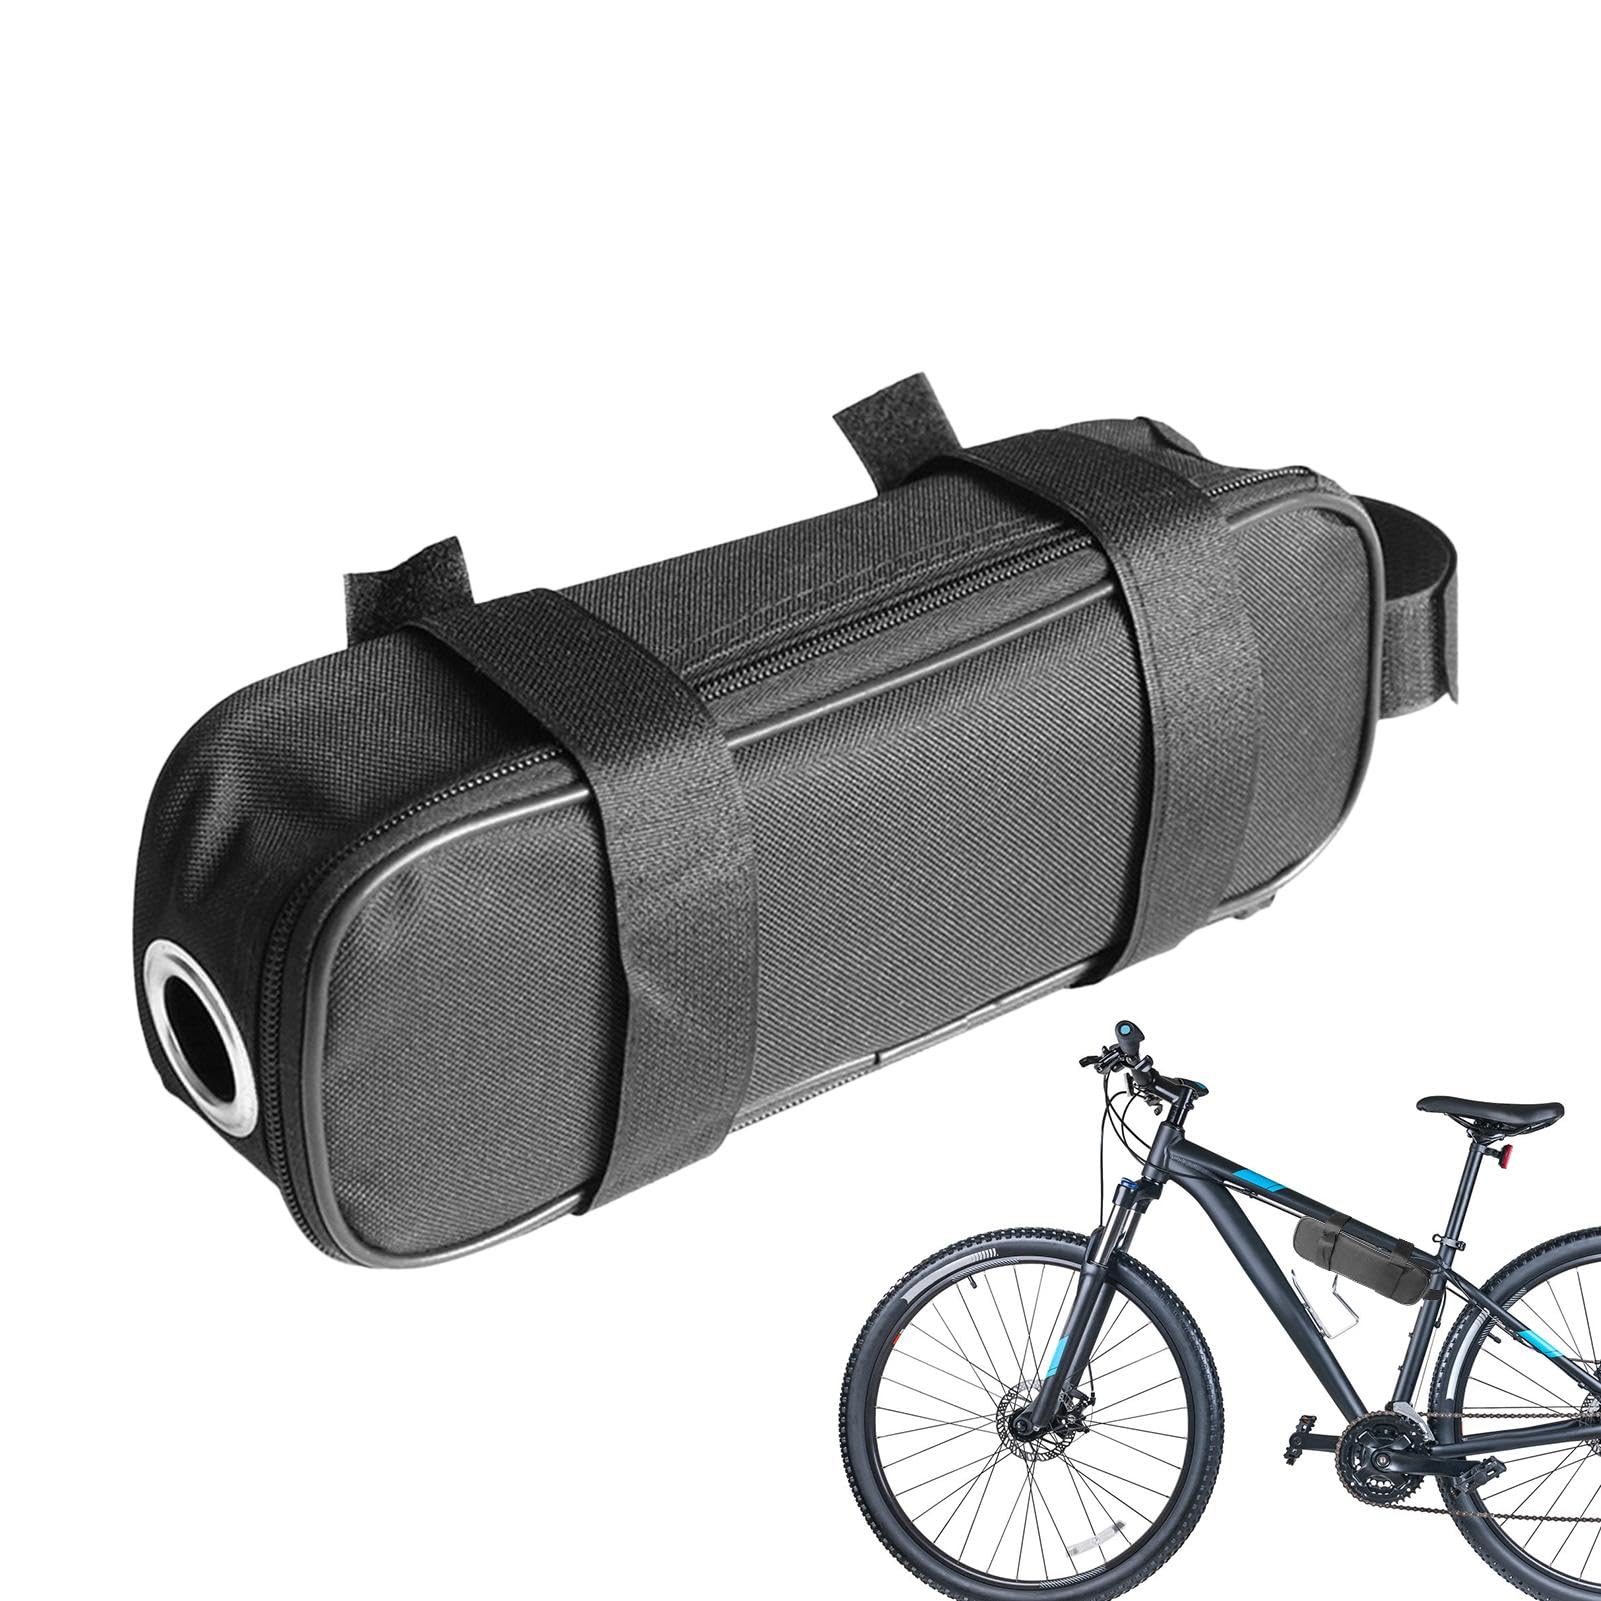 Eoixuqba Fahrradrahmentasche, E-Bike-Taschen | wasserdichte Oxford-Fahrradtaschen für Fahrradrahmen - Elektrischer Fahrrad-Controller-Träger, tragbare Fahrradrucksäcke und Taschen für von Eoixuqba